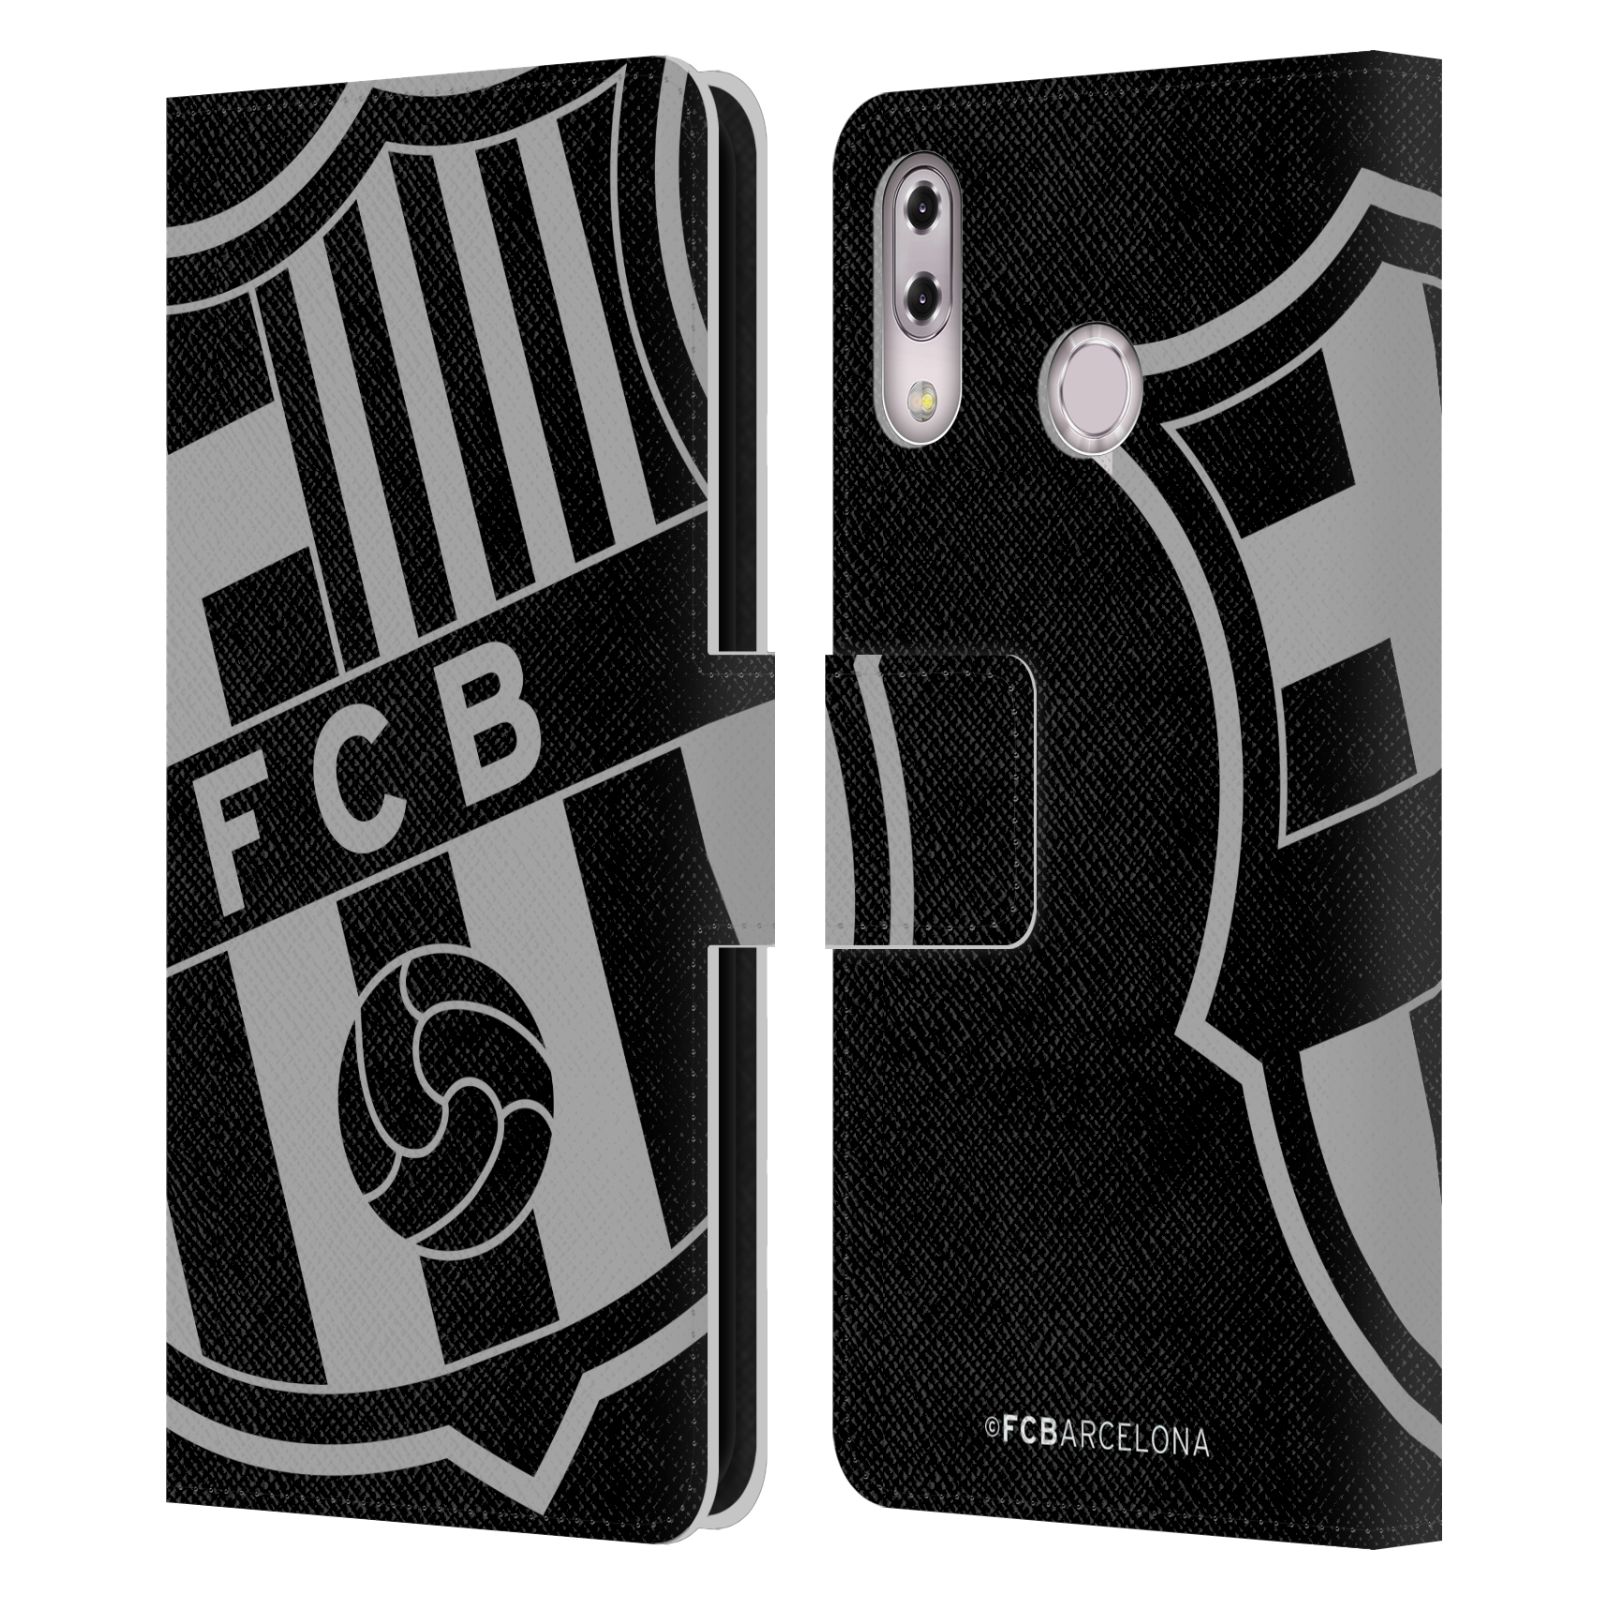 Pouzdro na mobil Asus Zenfone 5z ZS620KL, 5 ZE620KL  - HEAD CASE - FC Barcelona - černošedé logo